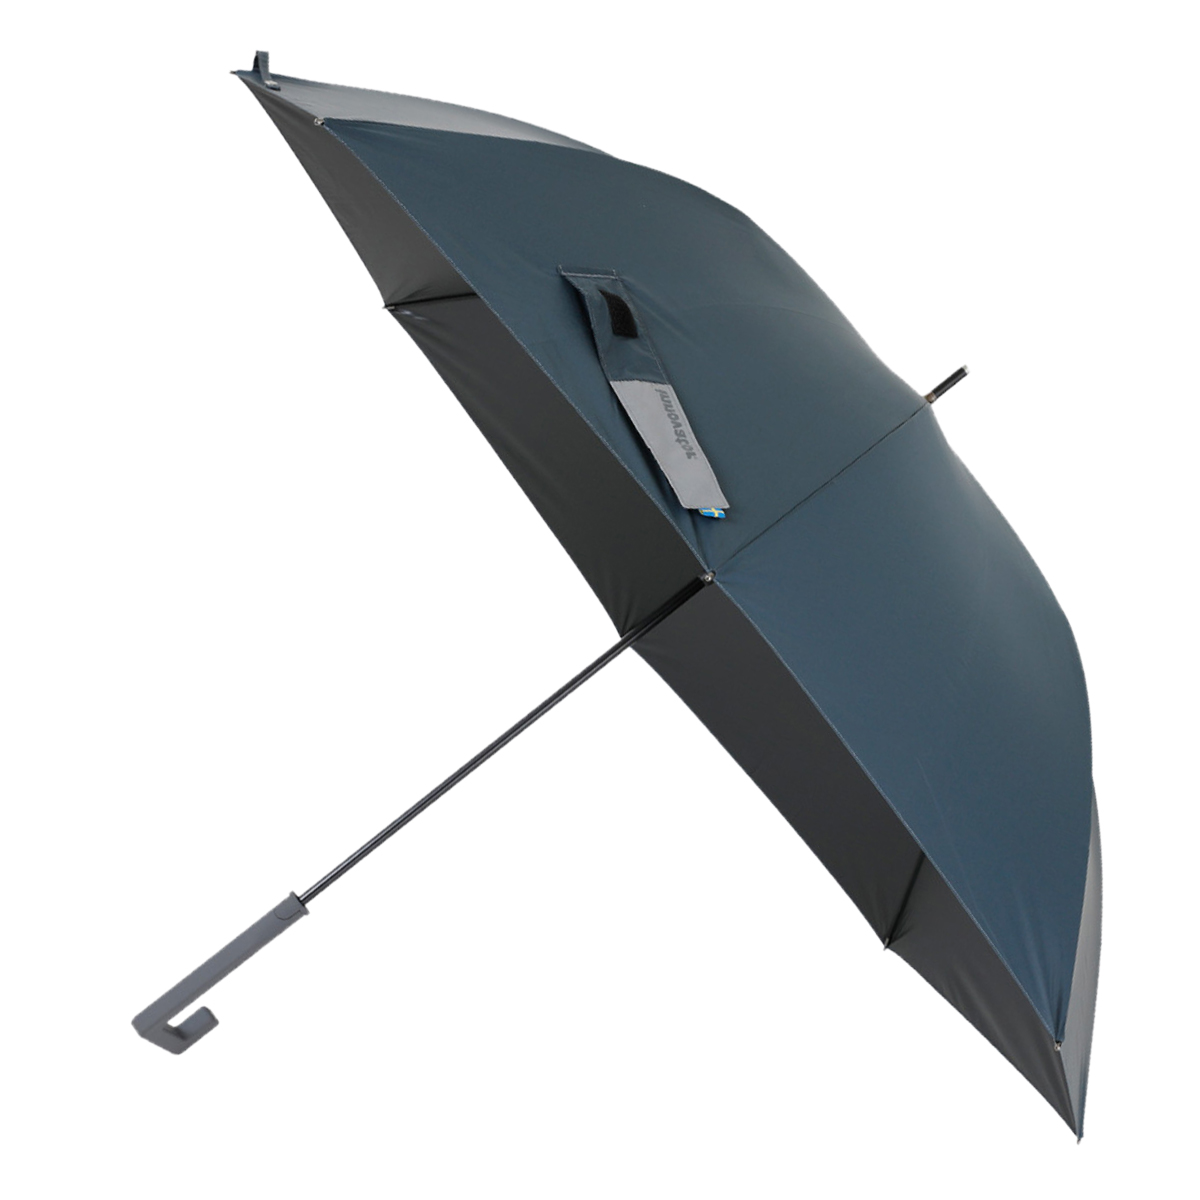 超安い Knf0 メンズ Safety Duomatic Big ミニ傘 折りたたみ傘 レビュー投稿で 5 還元 クニルプス Knirps 大きめ 大きい 自動開閉 雨傘 折りたたみ傘 Www Piersoft Com